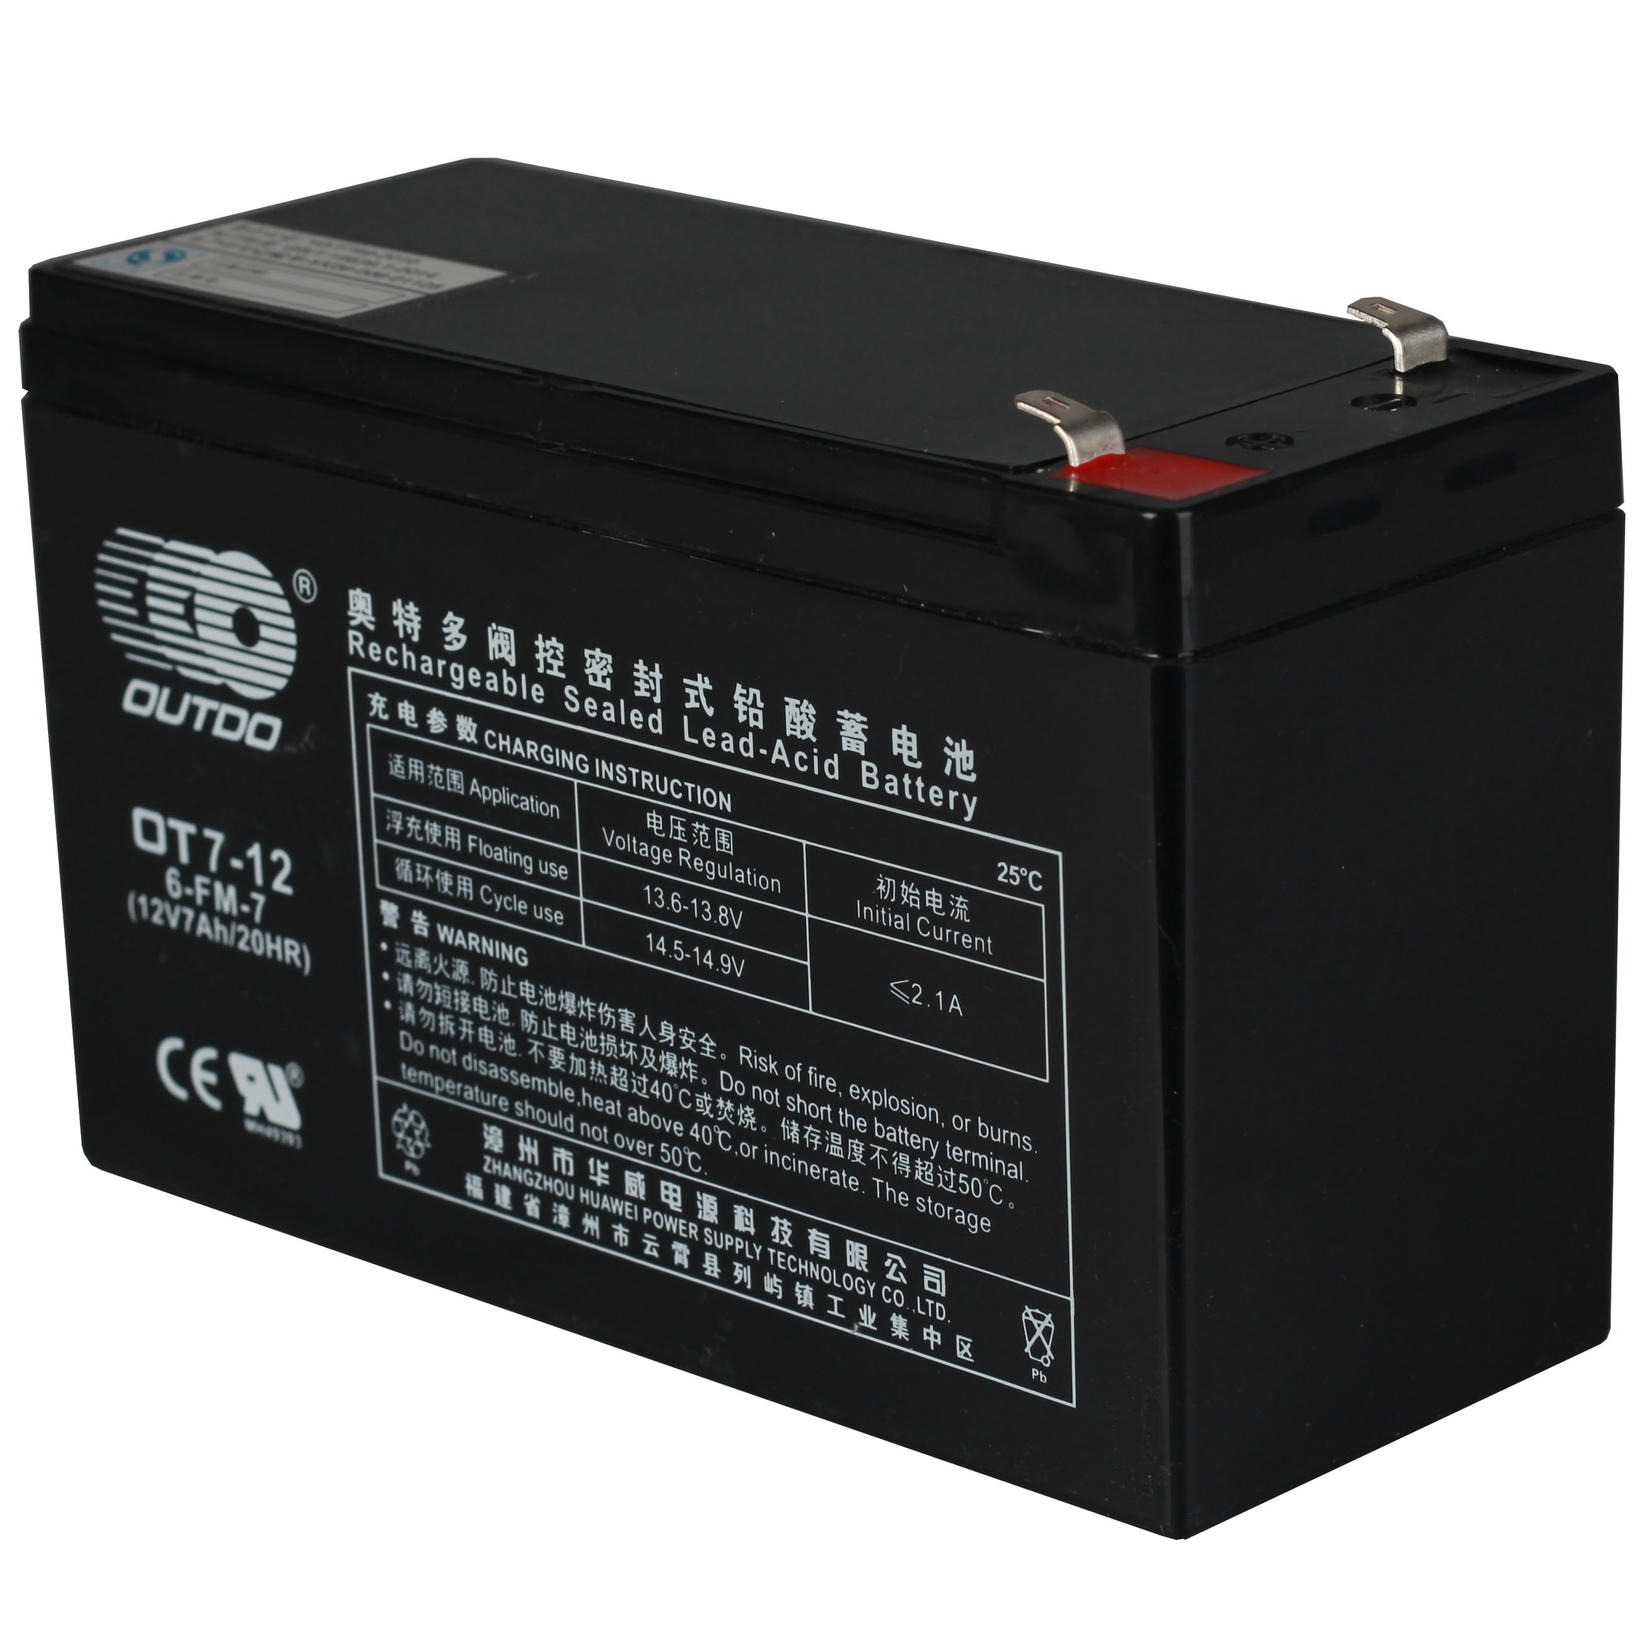 奥特多蓄电池OT7-12 奥特多蓄电池12V7AH 铅酸免维护蓄电池 奥特多蓄电池厂家 UPS专用蓄电池图片